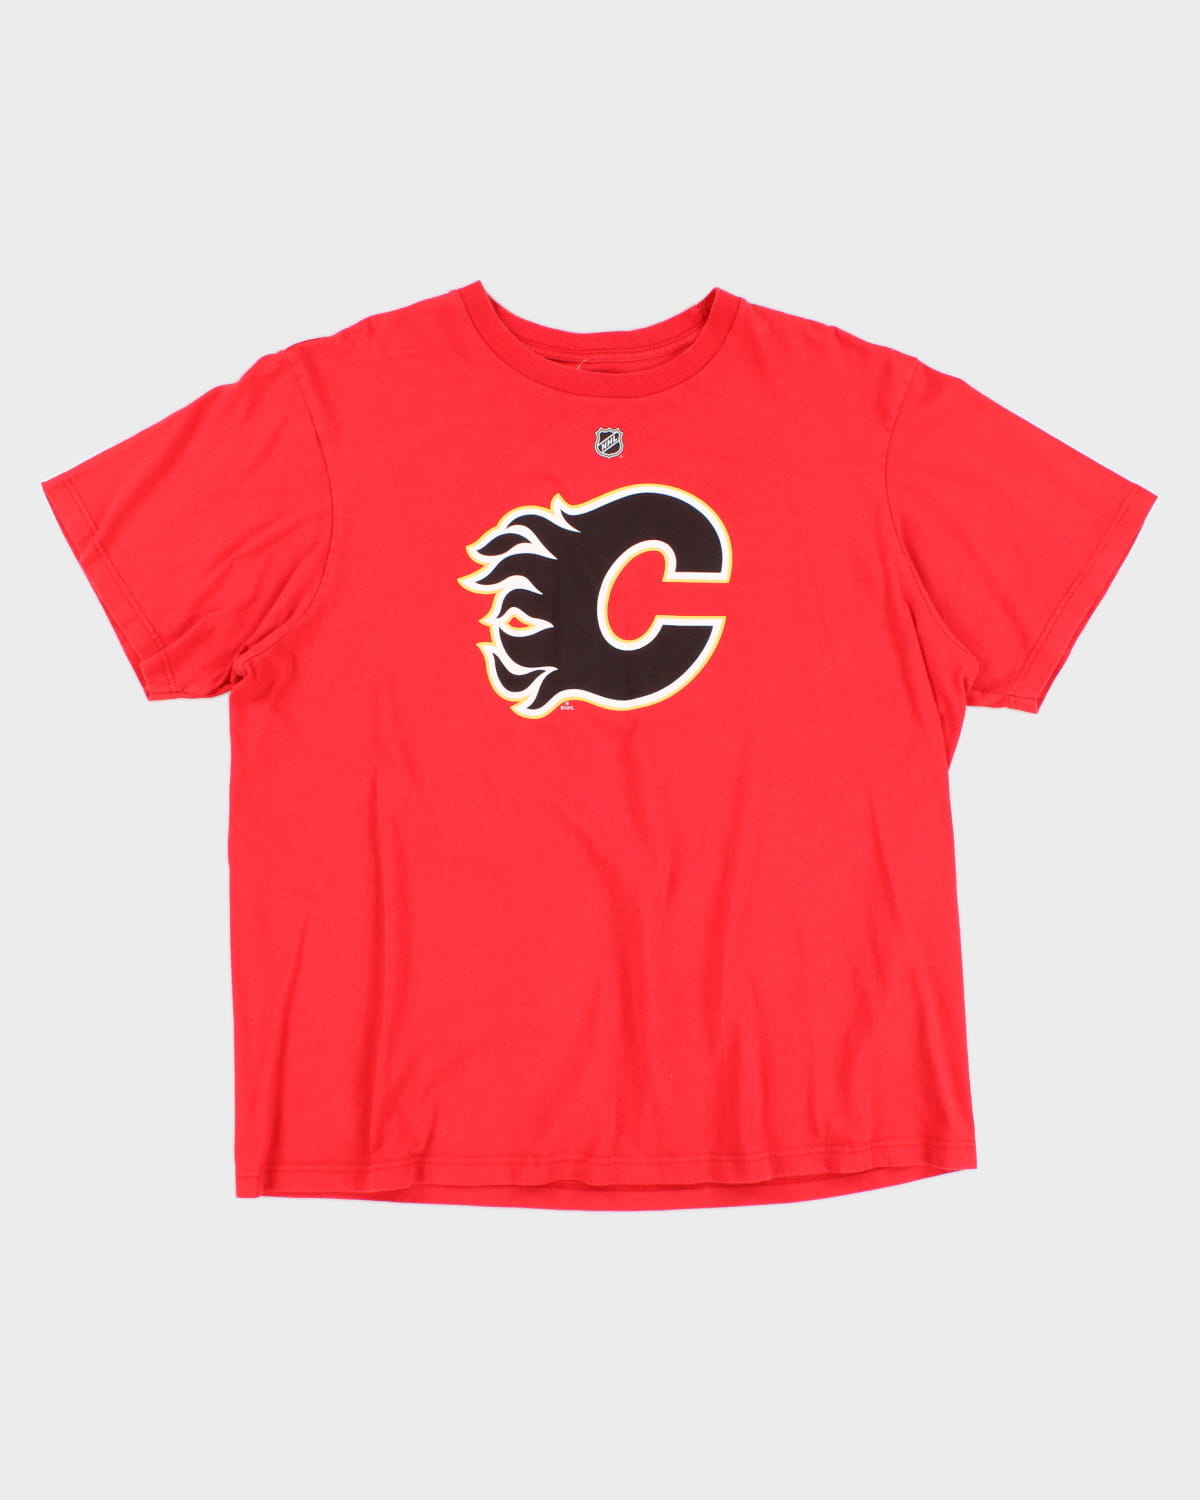 NHL x Calgary Flames Jiří Hudler #24 T-Shirt - XXL